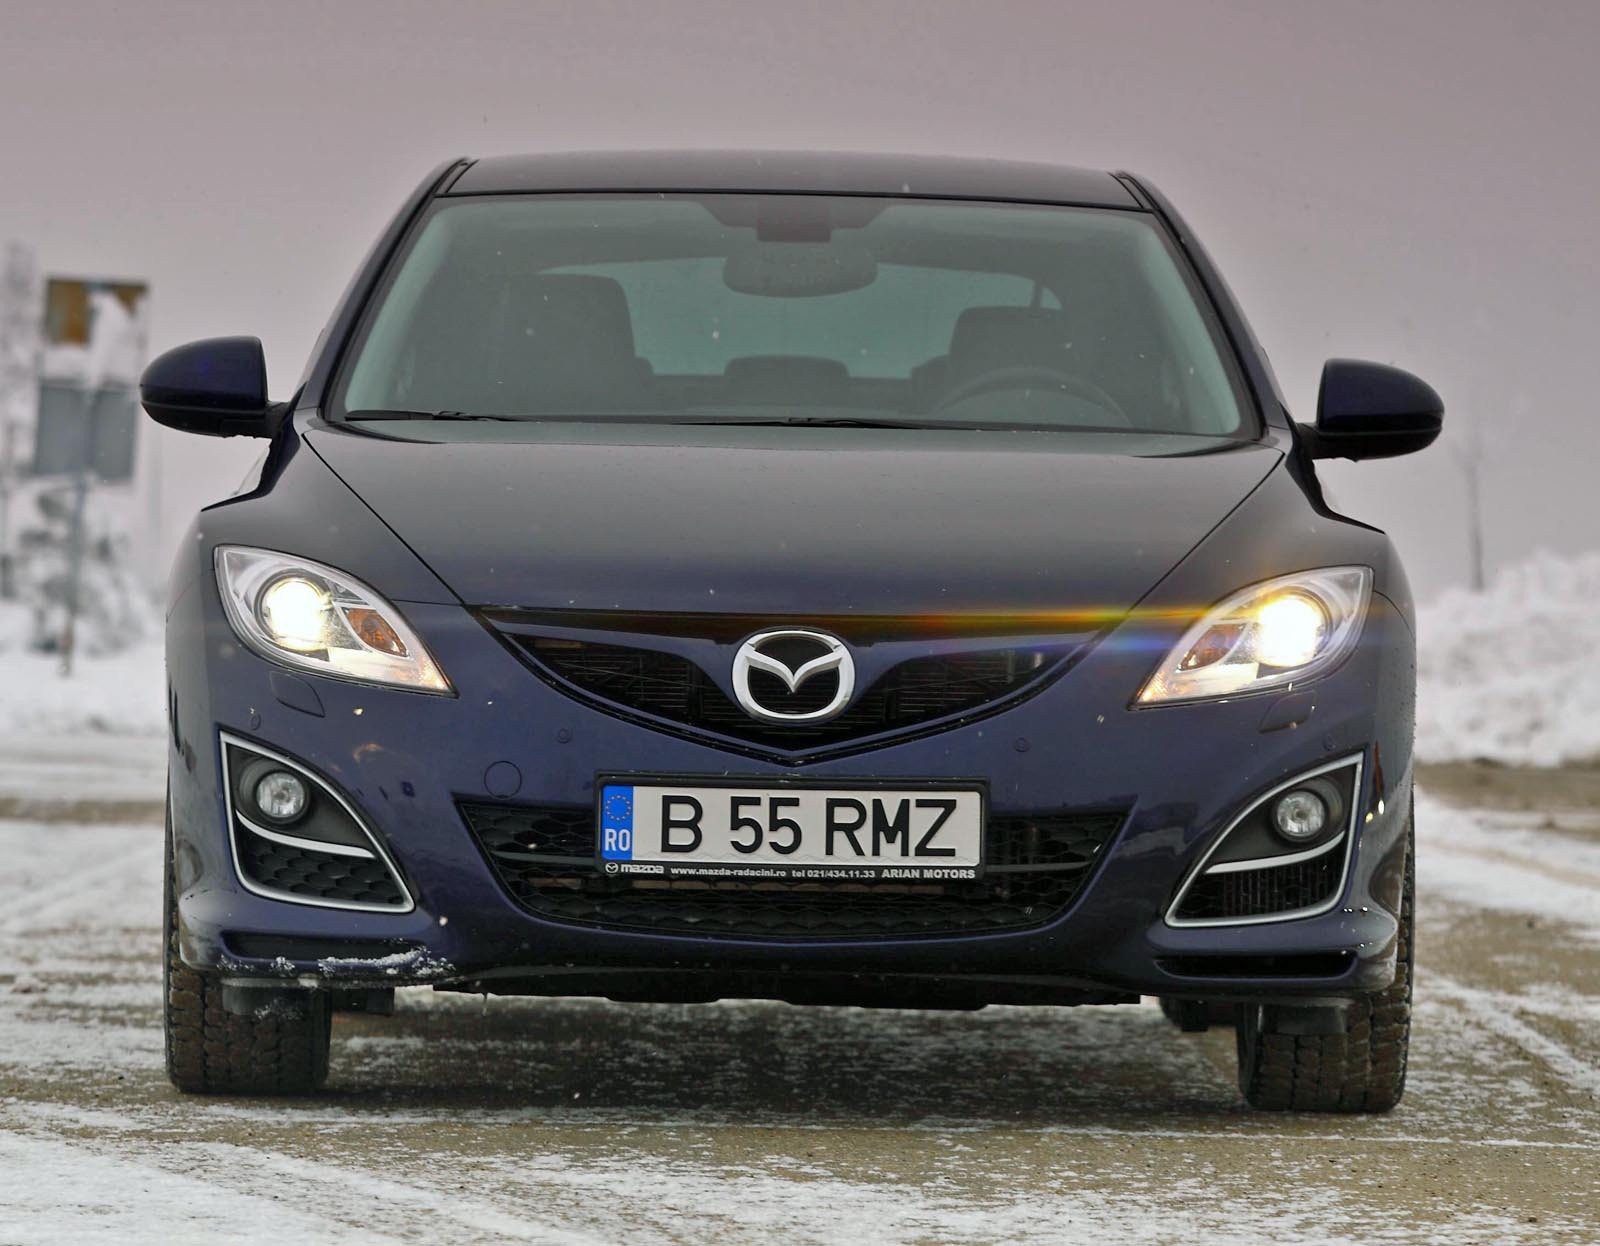 Mazda6 2.2 CD 163 este oferita doar in nivelul de echipare GTA, cu un pret de 25.990 euro